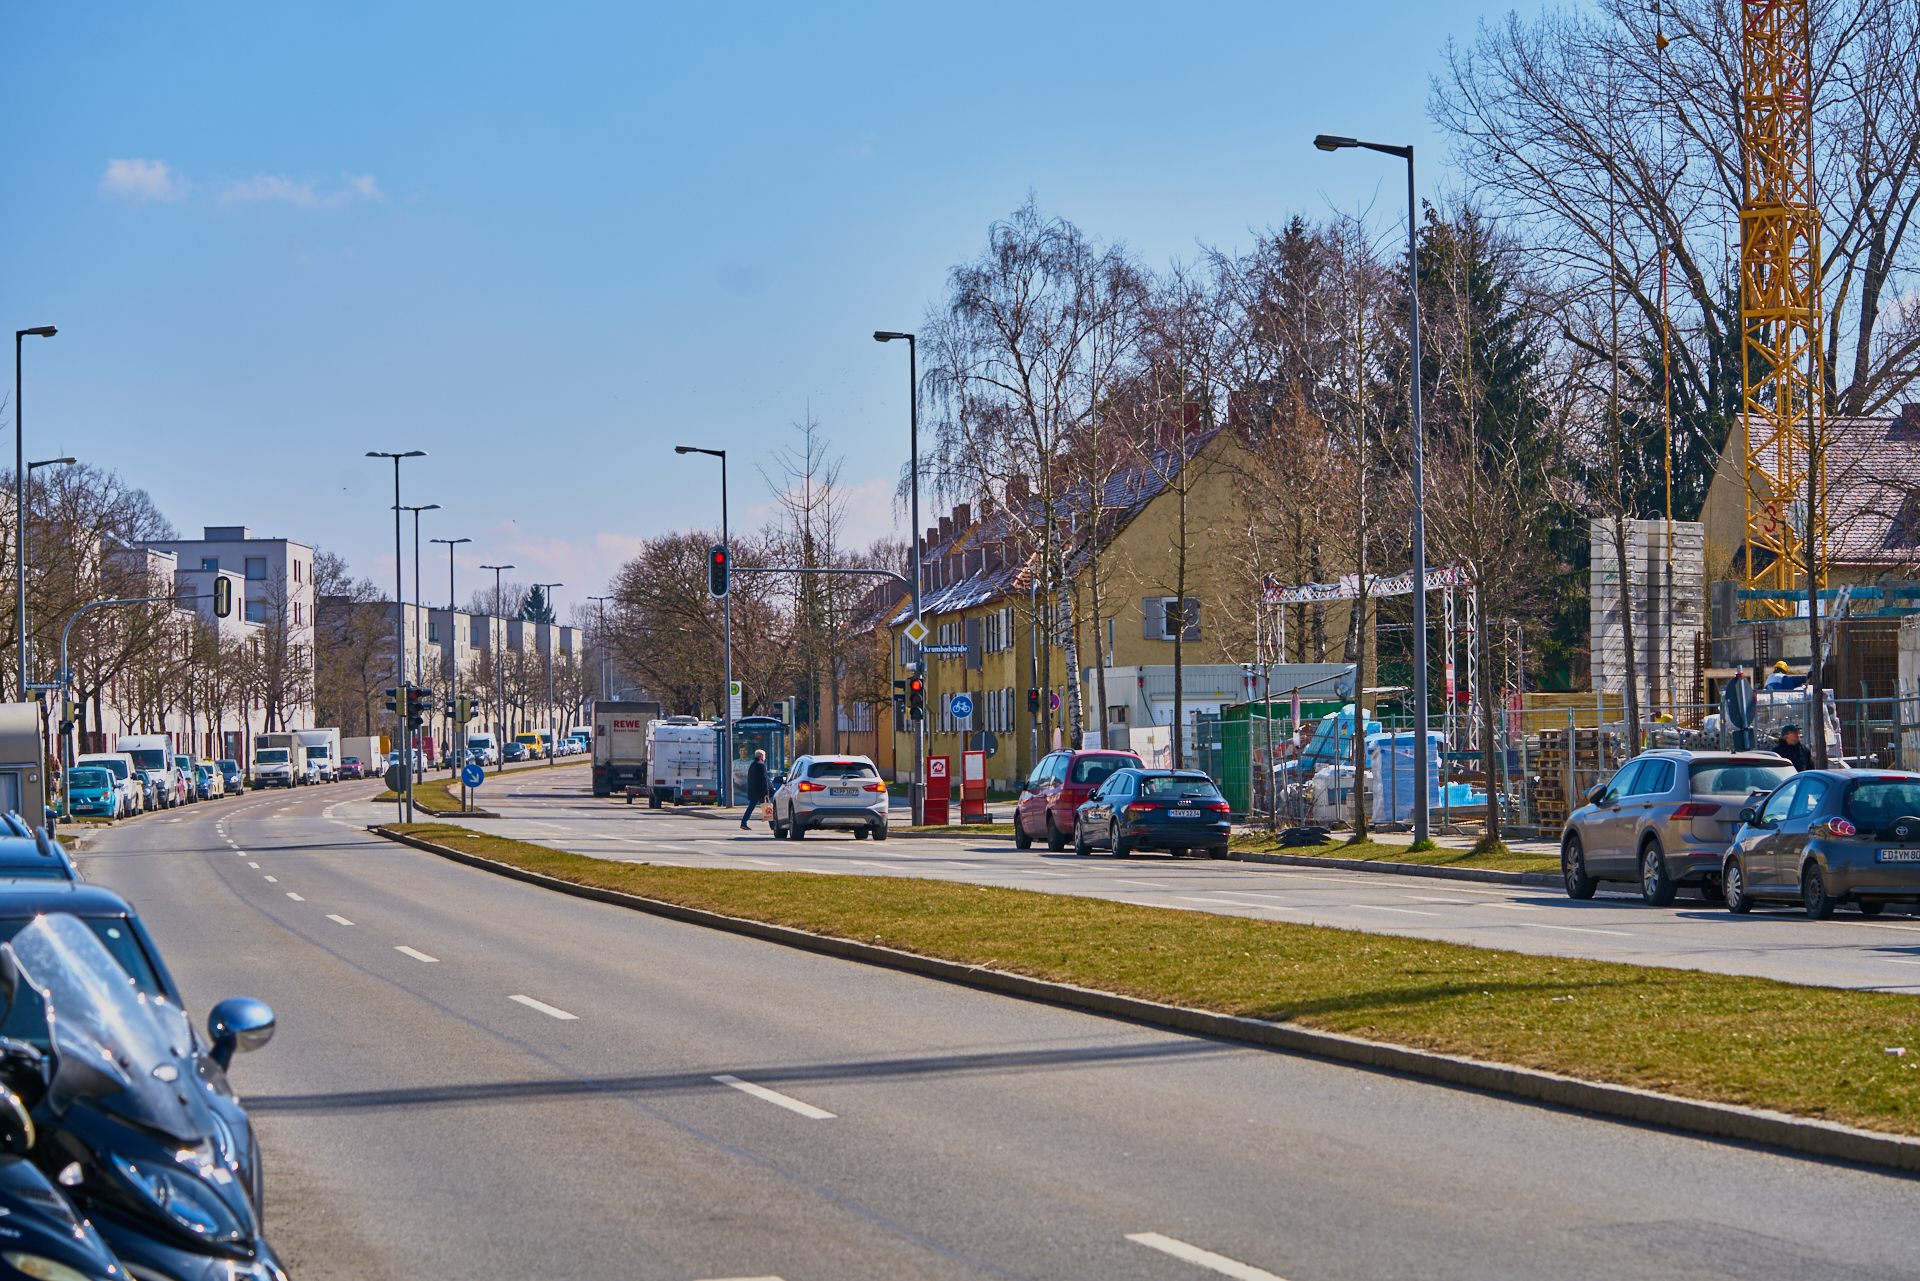 24.03.2018 - Baustelle Maikäfersiedlung in der Bad Schachener Straße in Neuperlach